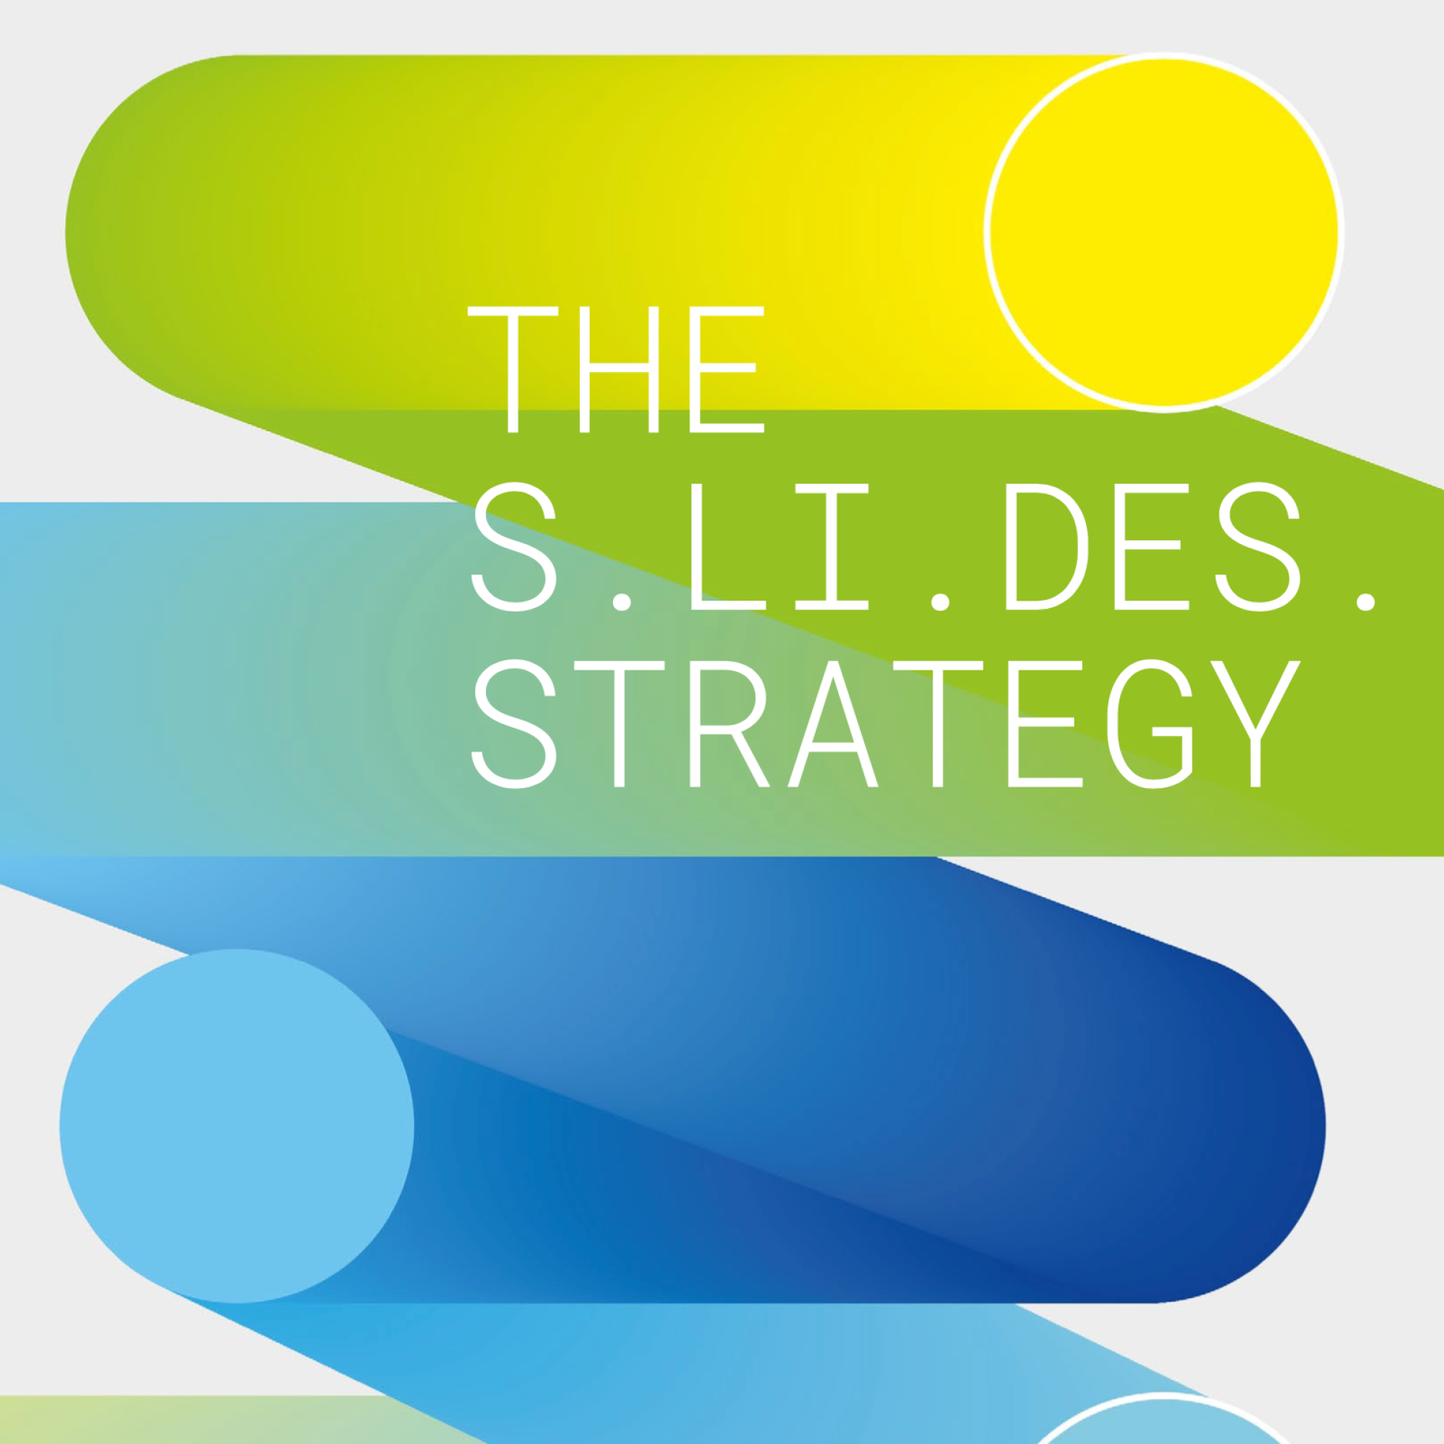 The S.li.des strategy